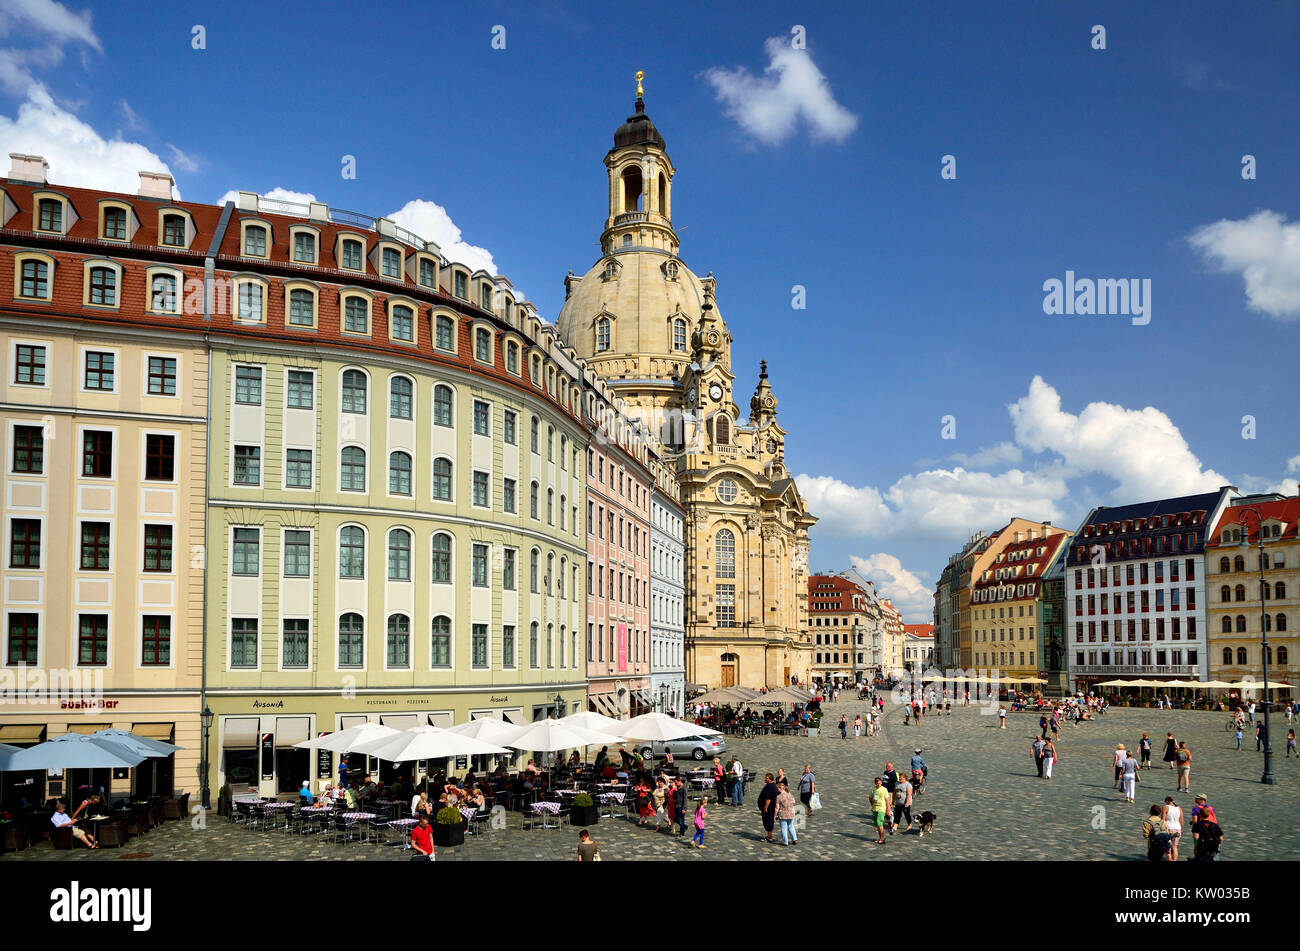 Dresden, Nuevo mercado con la Iglesia de Nuestra Señora, Neumarkt mit Frauenkirche Foto de stock